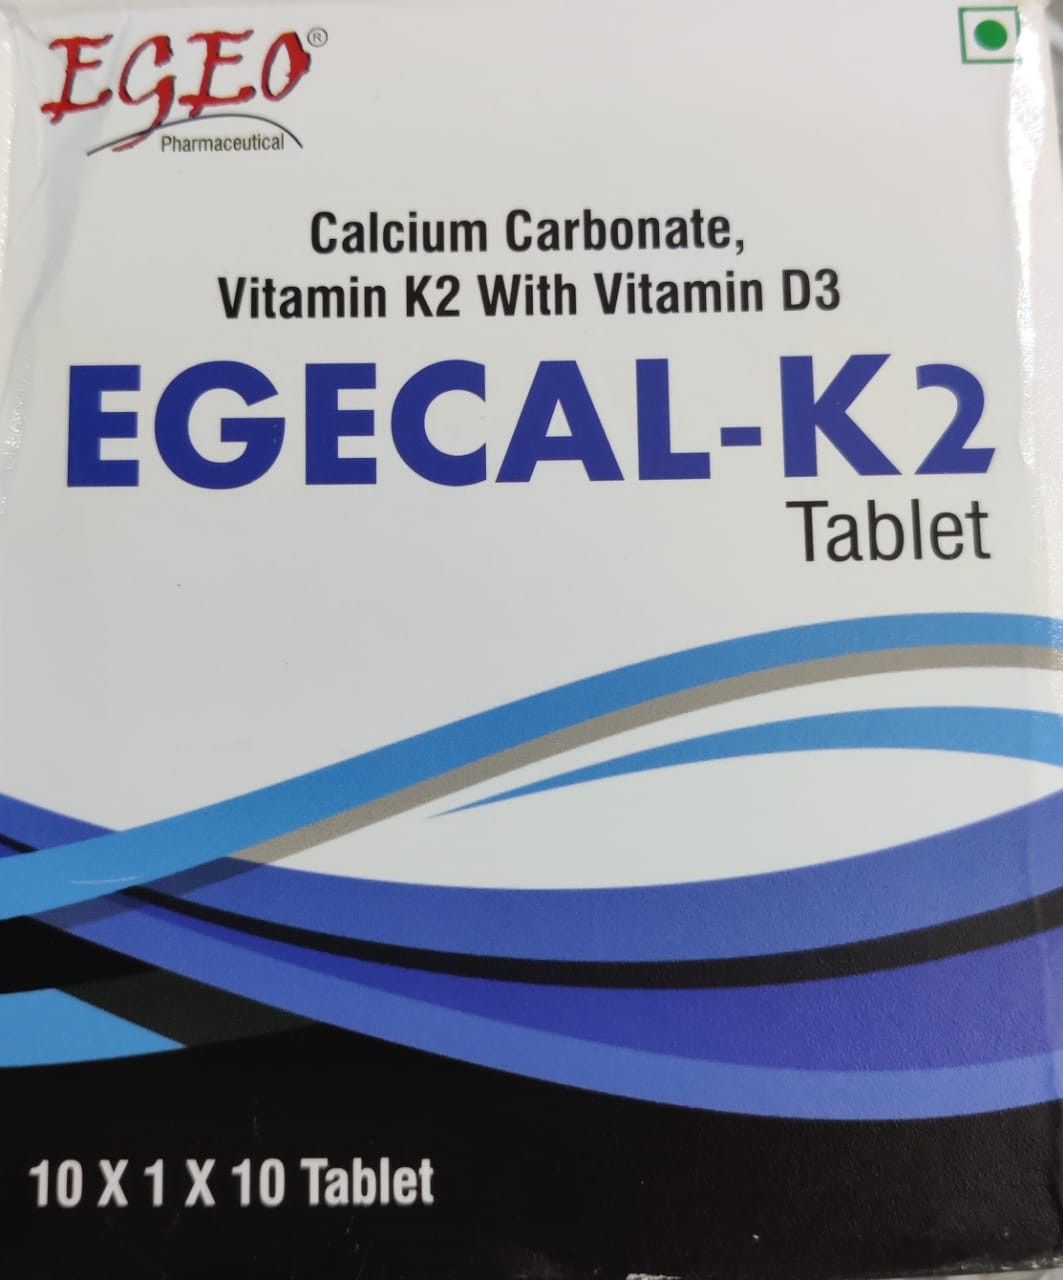 Egecal-k2 Tablet